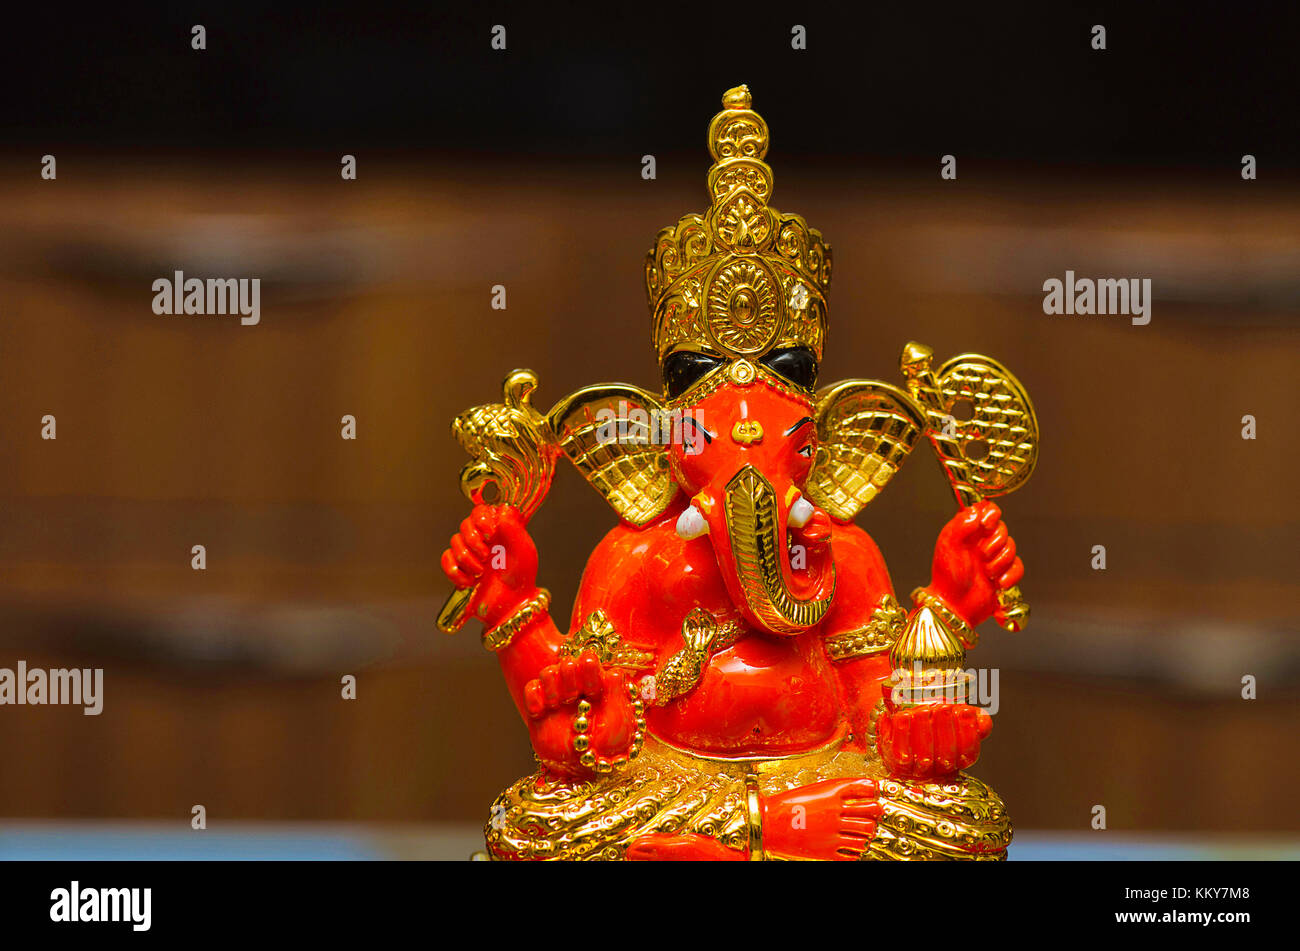 An idol of Lord Ganesha, also known as Ganapati or Vinayaka, his ...